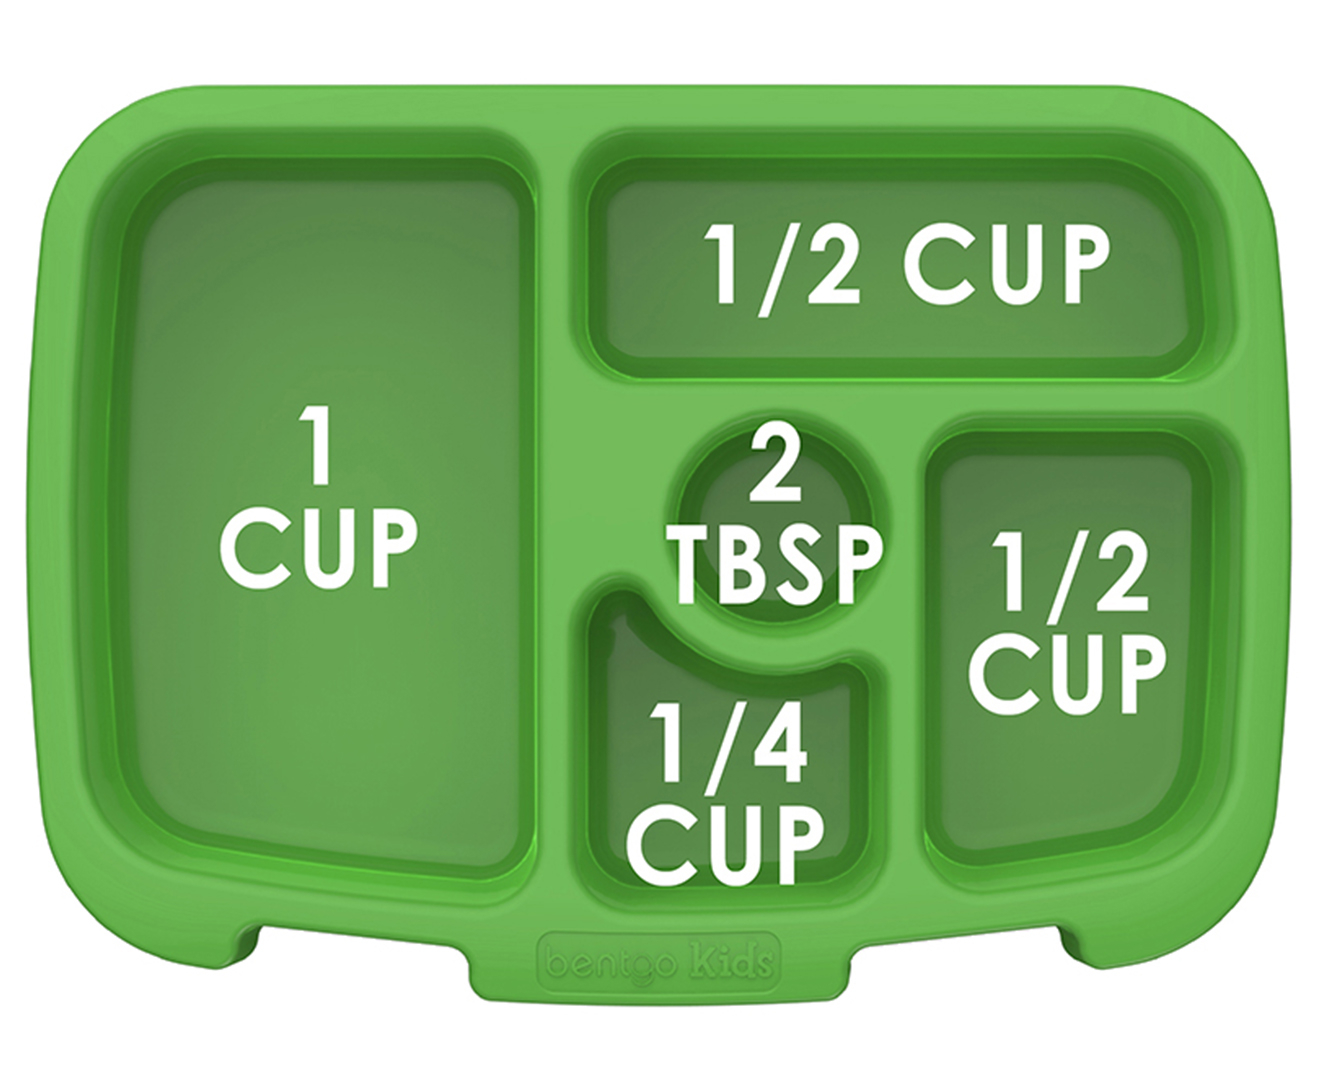 Buy Bentgo Kids Leak-proof Bento Lunch Box - Green – Biome New Zealand  Online